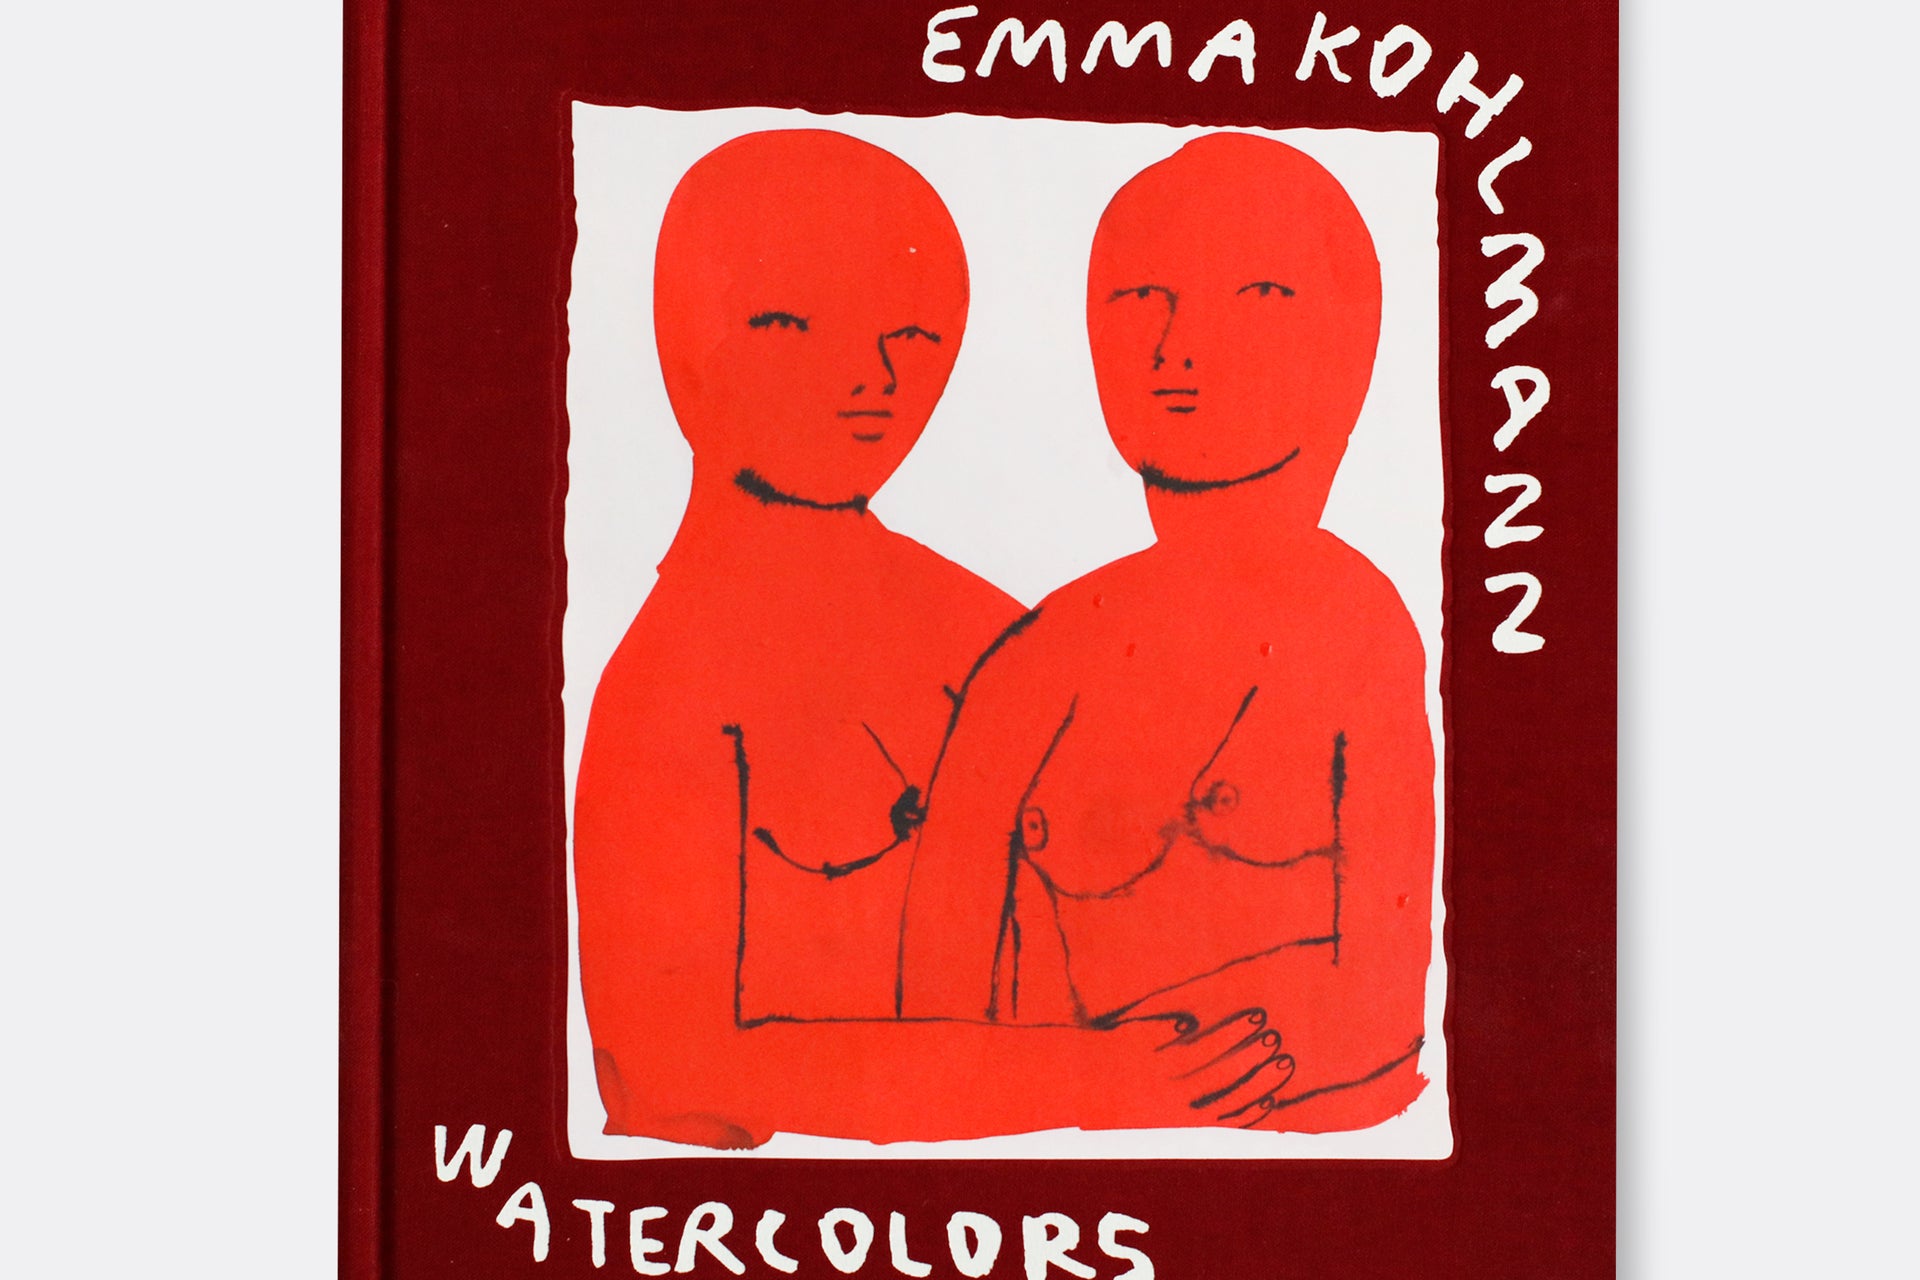 NOW ONLINE: WATERCOLORS BY EMMA KOHLMANN